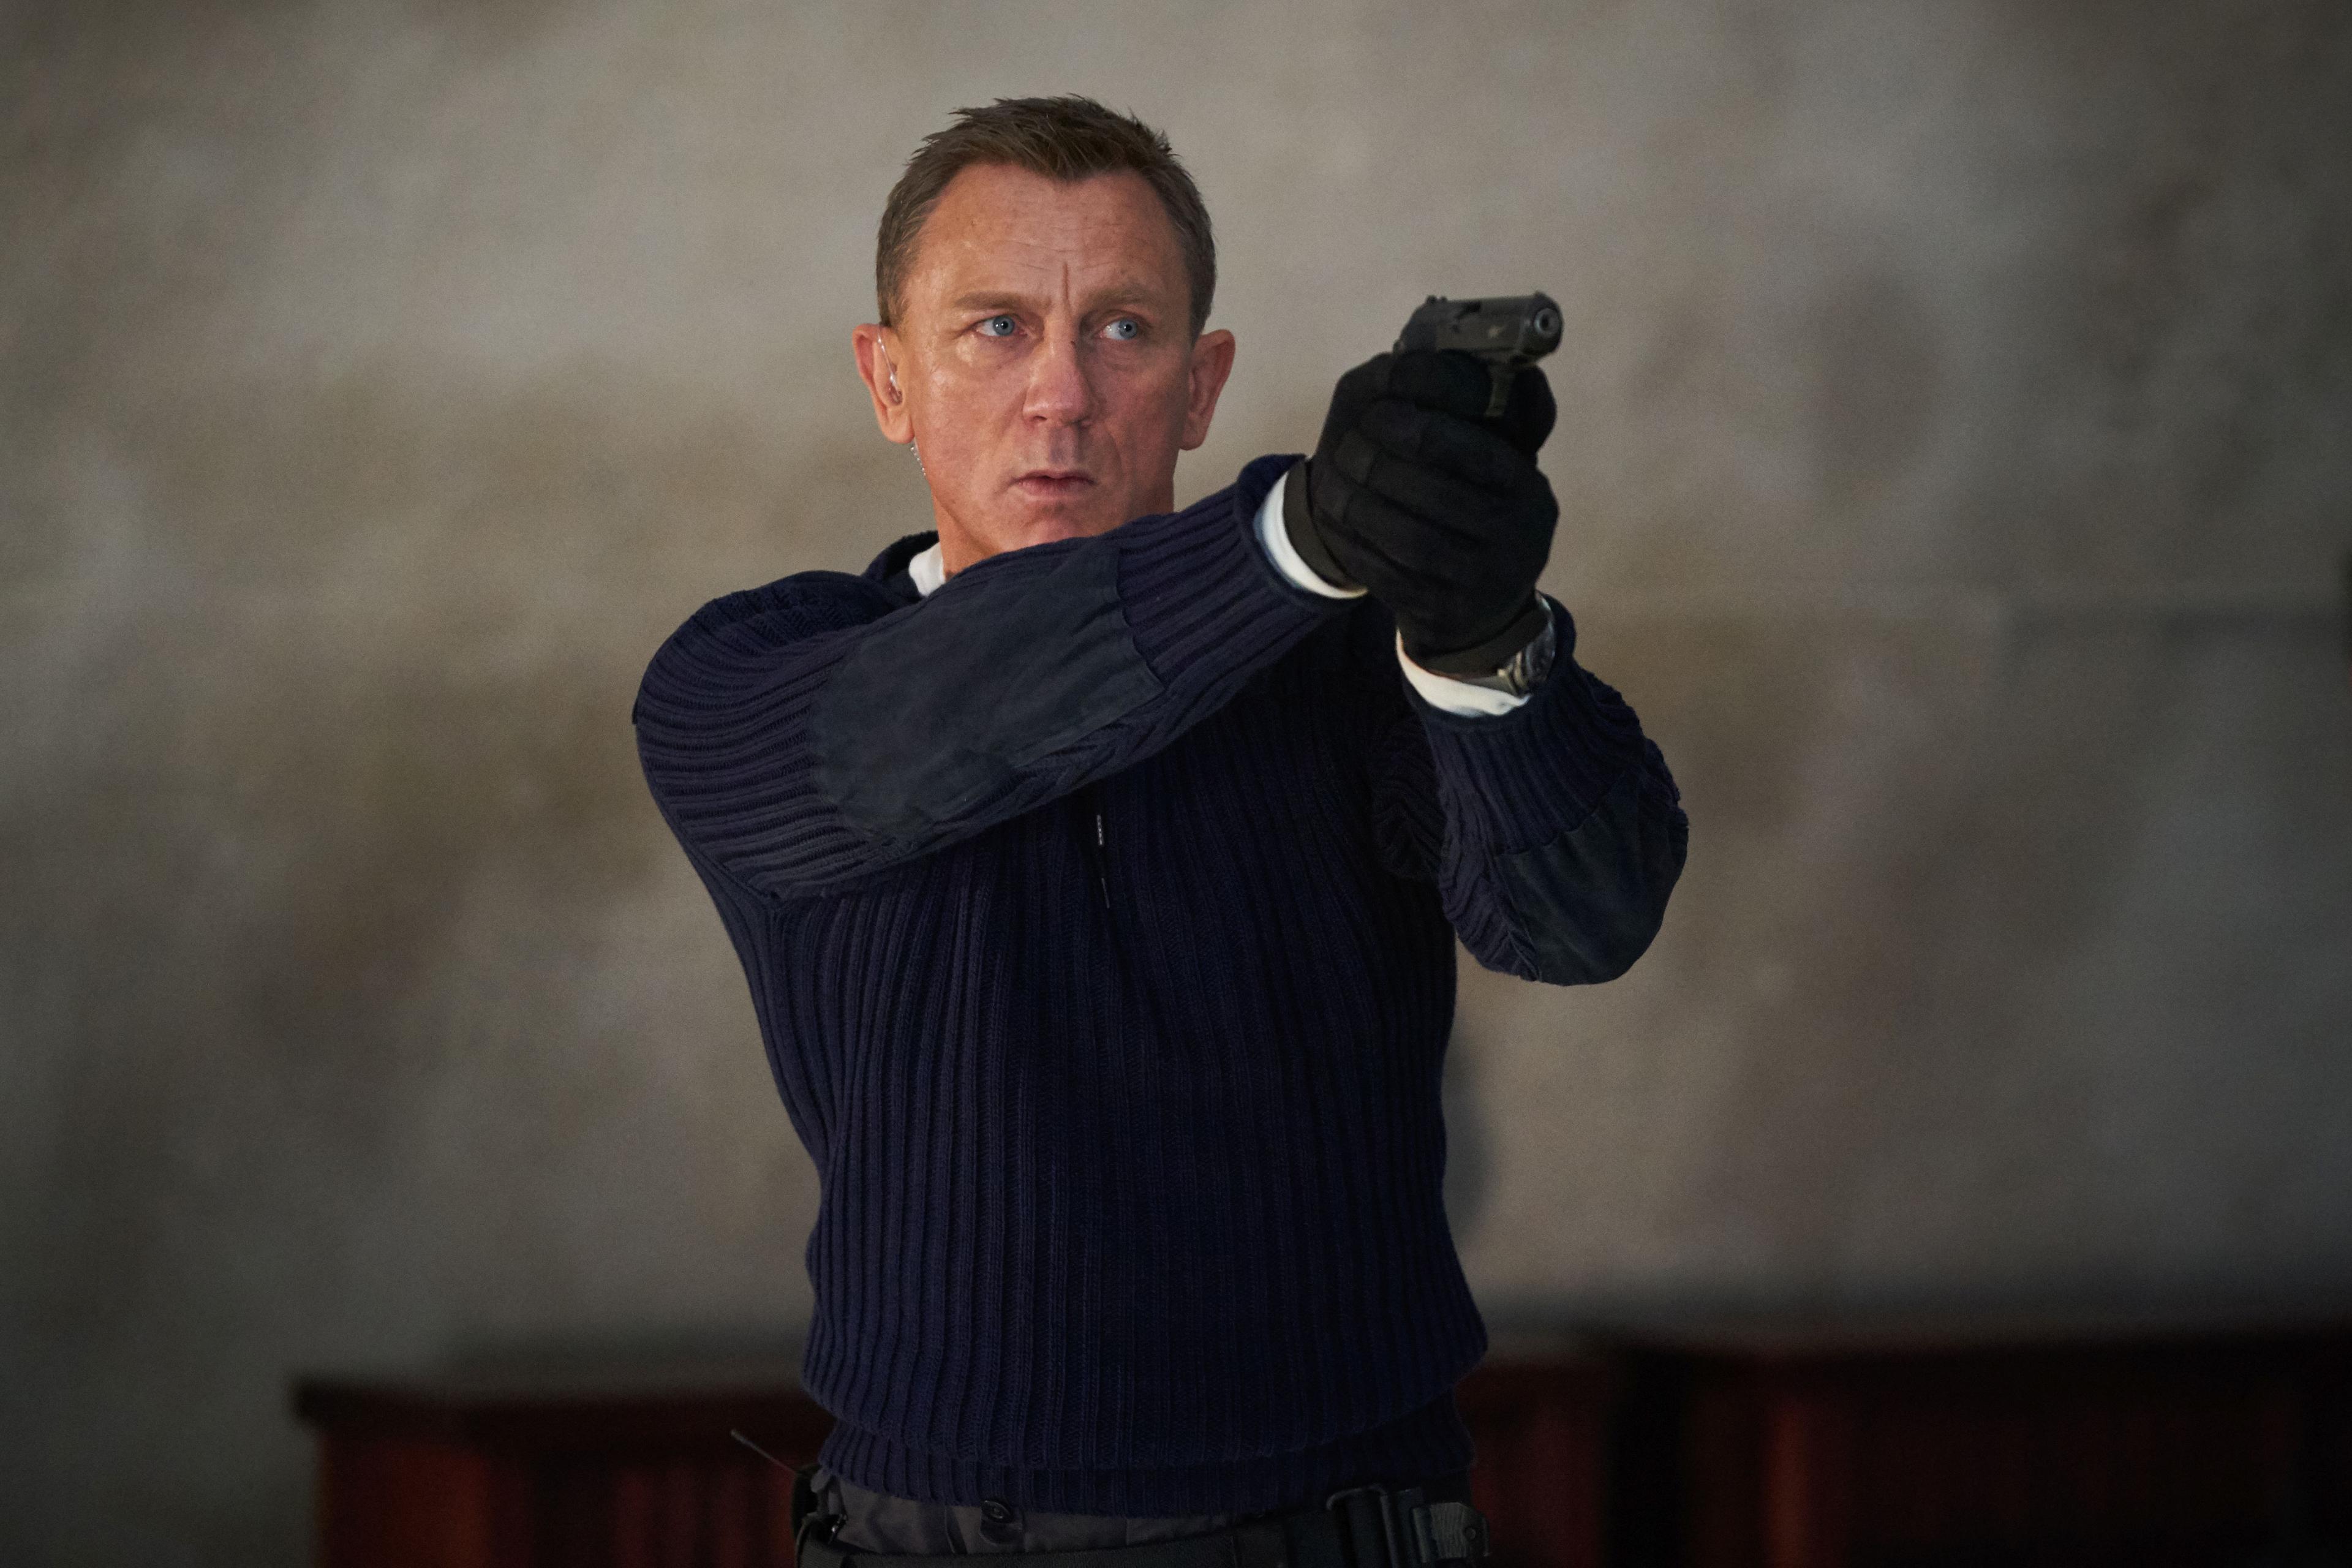 "Avaz" donosi ekskluzivni intervju s Danijelom Krejgom, agentom 007: Bond nije tip koji voli biti besposlen